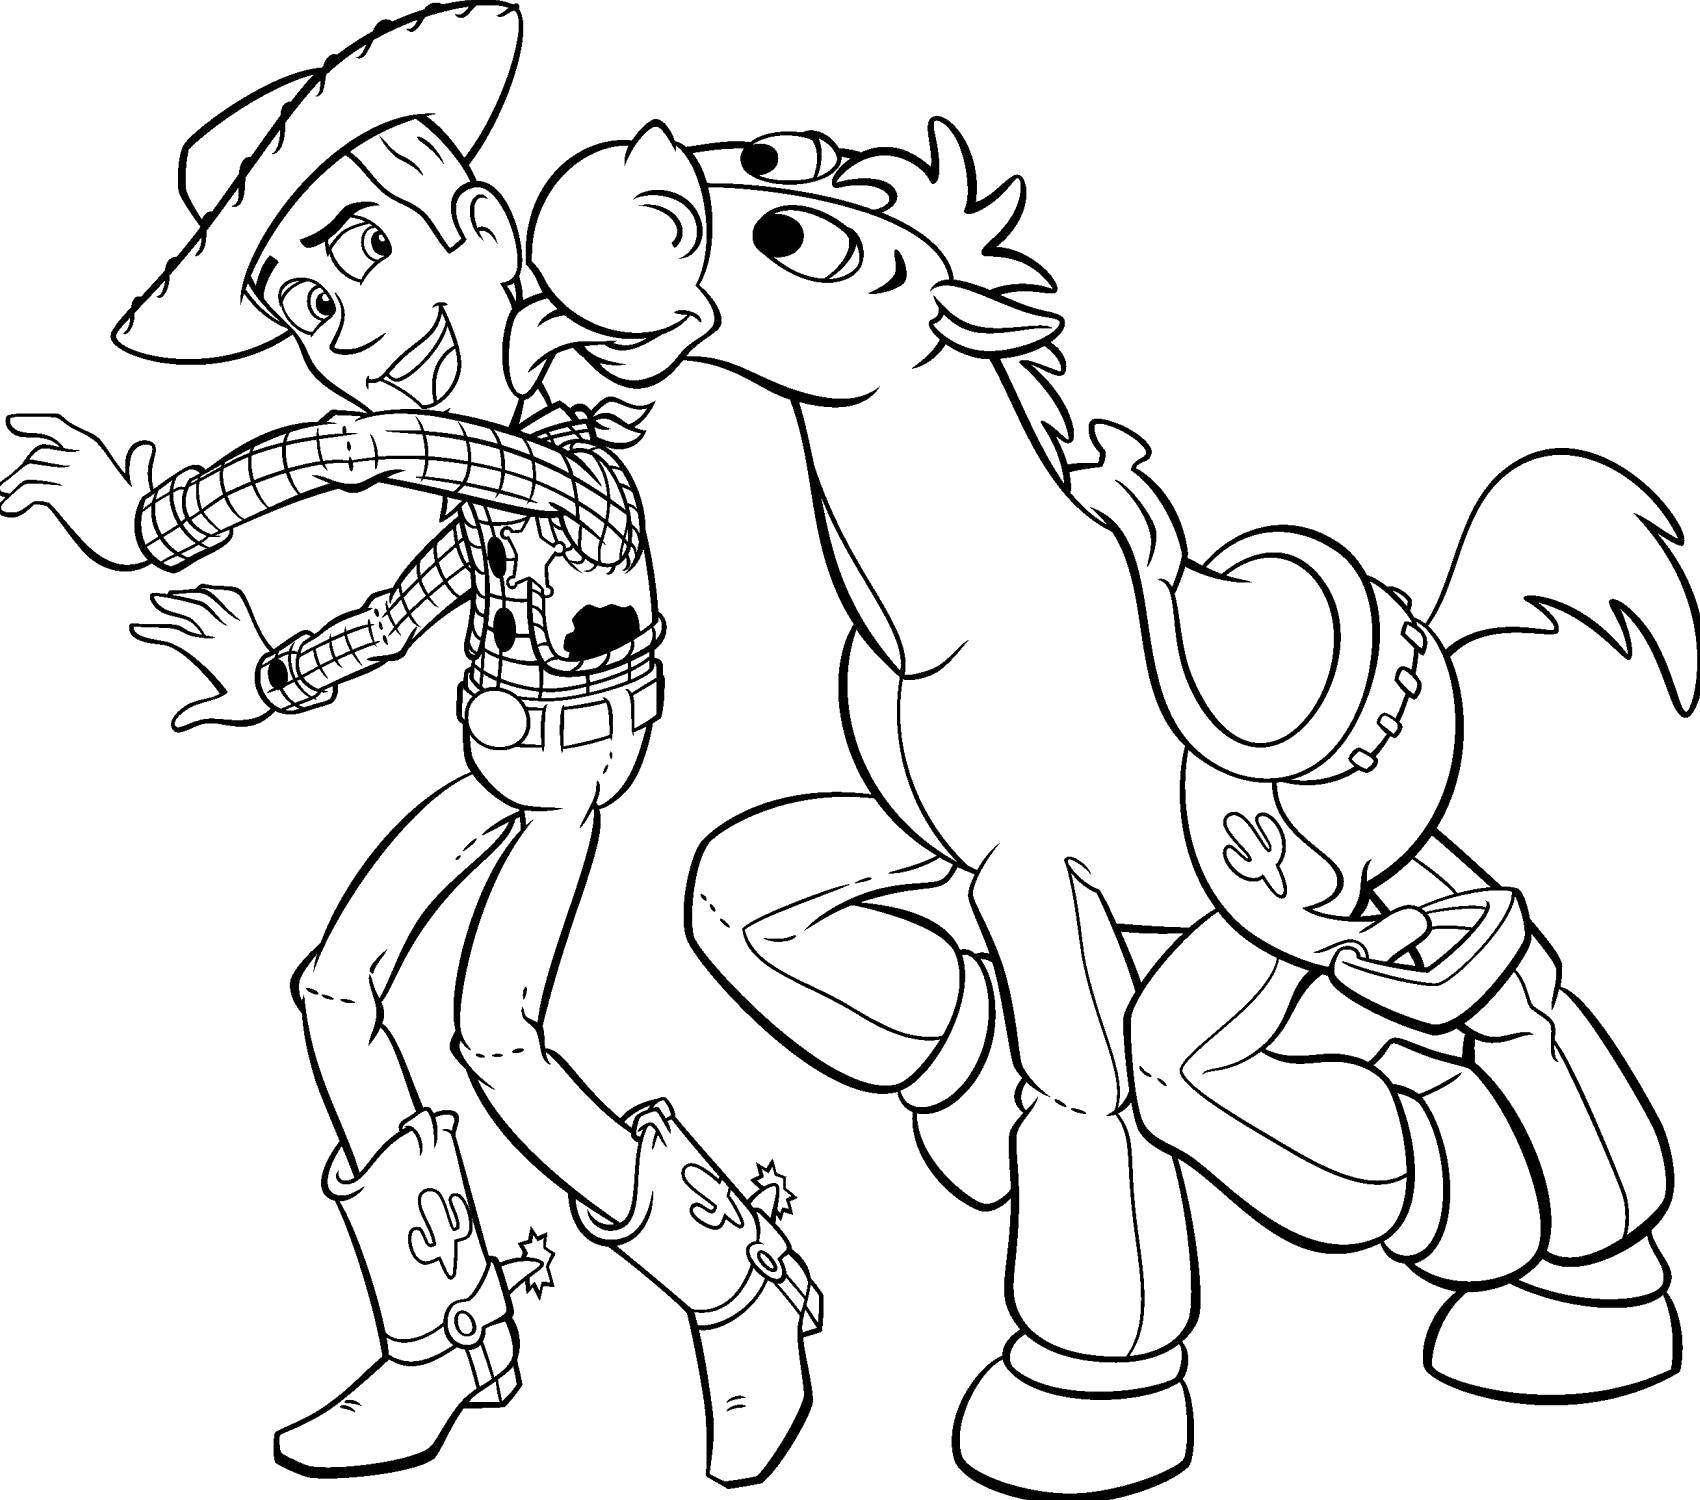 Опис: розмальовки  Шериф вуді з конем.. Категорія: розмальовки. Теги:  Персонаж з мультфільму, Історія іграшок .